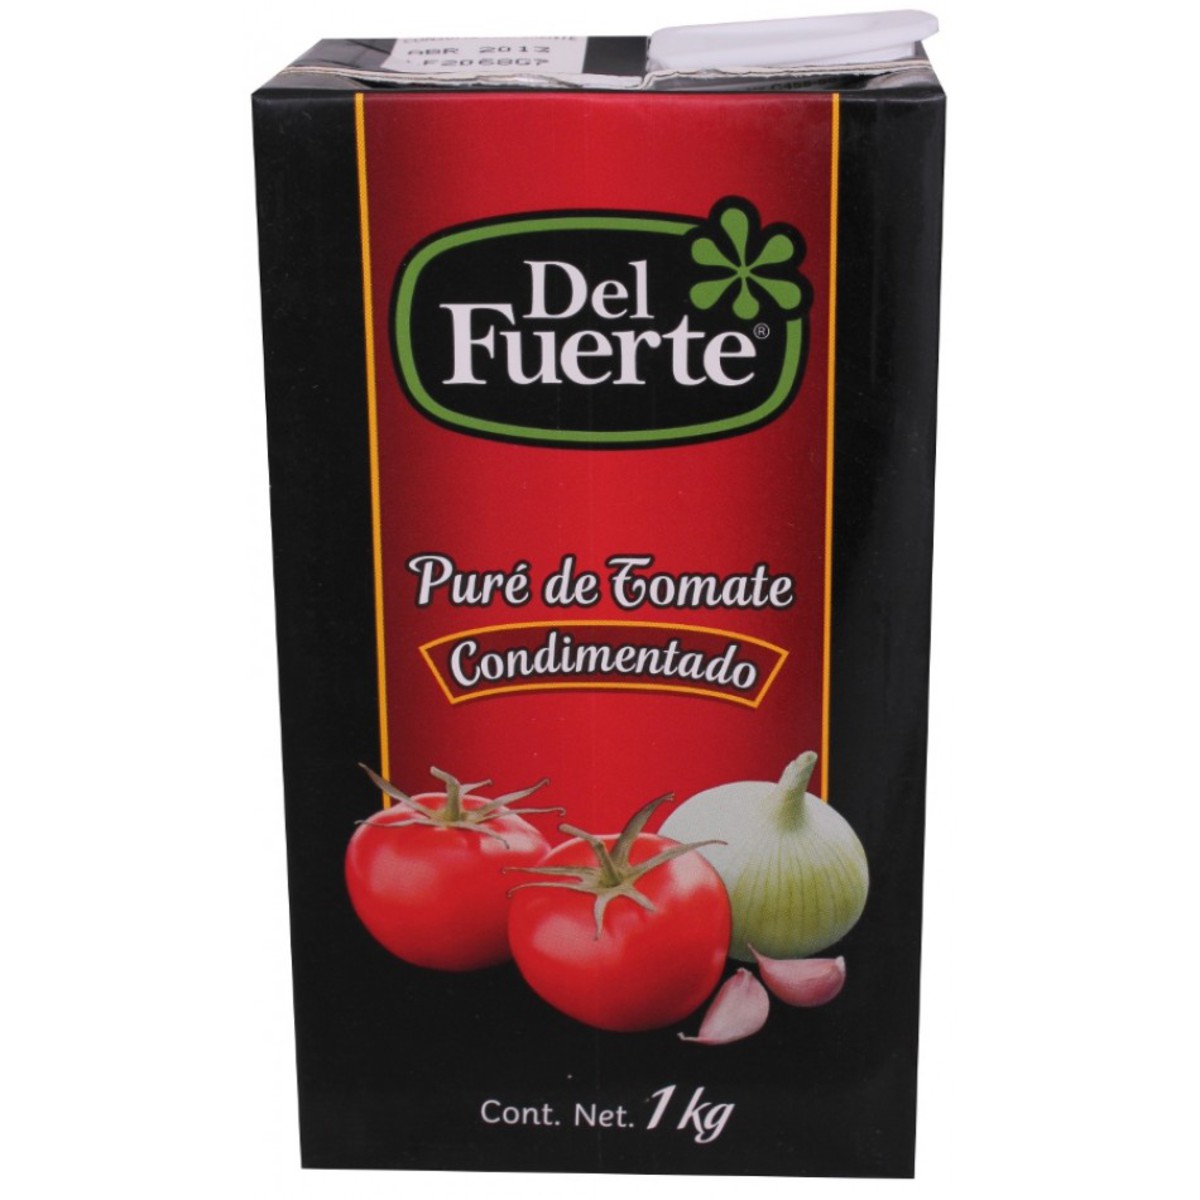 Pure Tomate Del Fuerte en canasta en casa